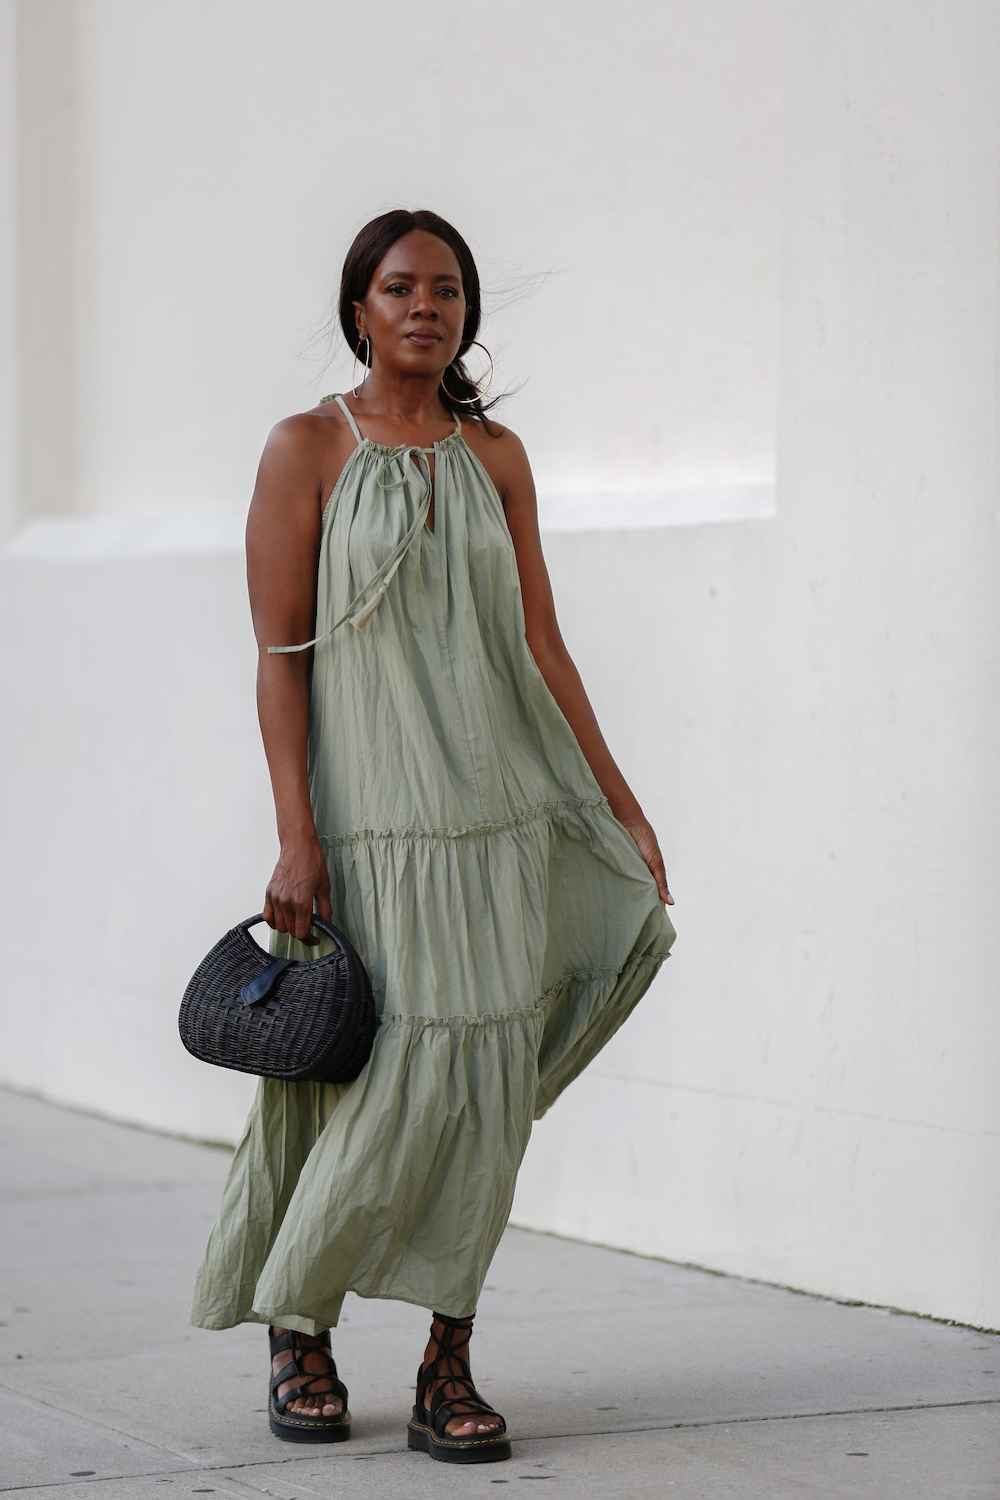 Green Summer Dresses, Black Gladiator Sandals